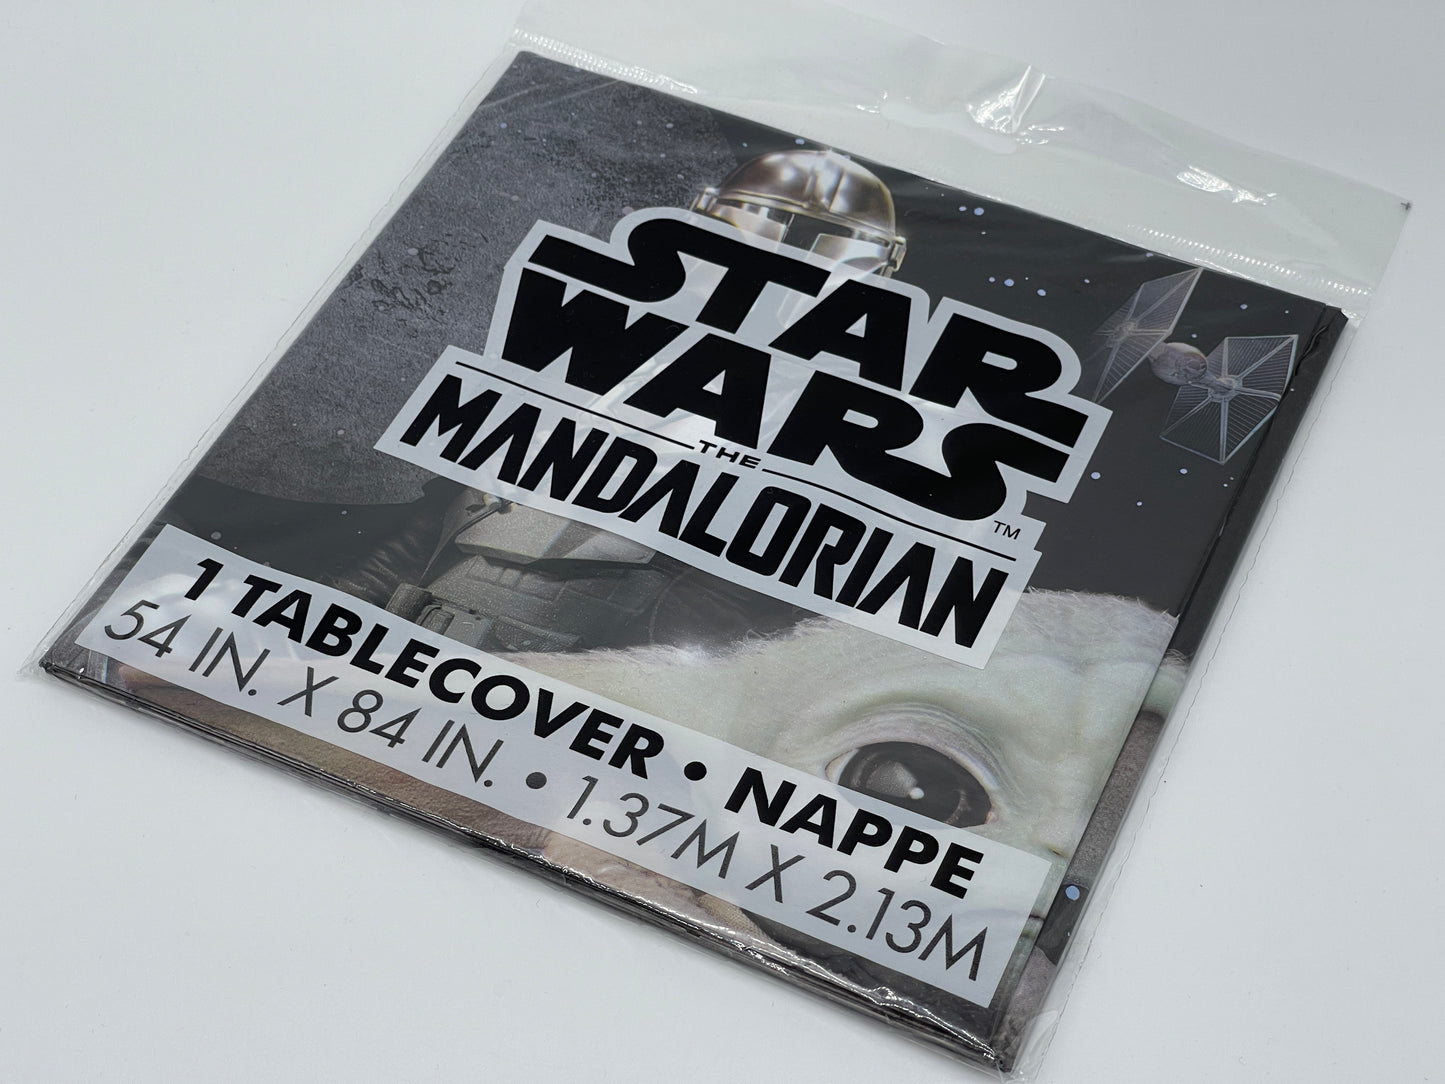 Star Wars Mandalorian Party Geburtstags Tischdecke aus Plastik (1,37 m x 2,13 m)